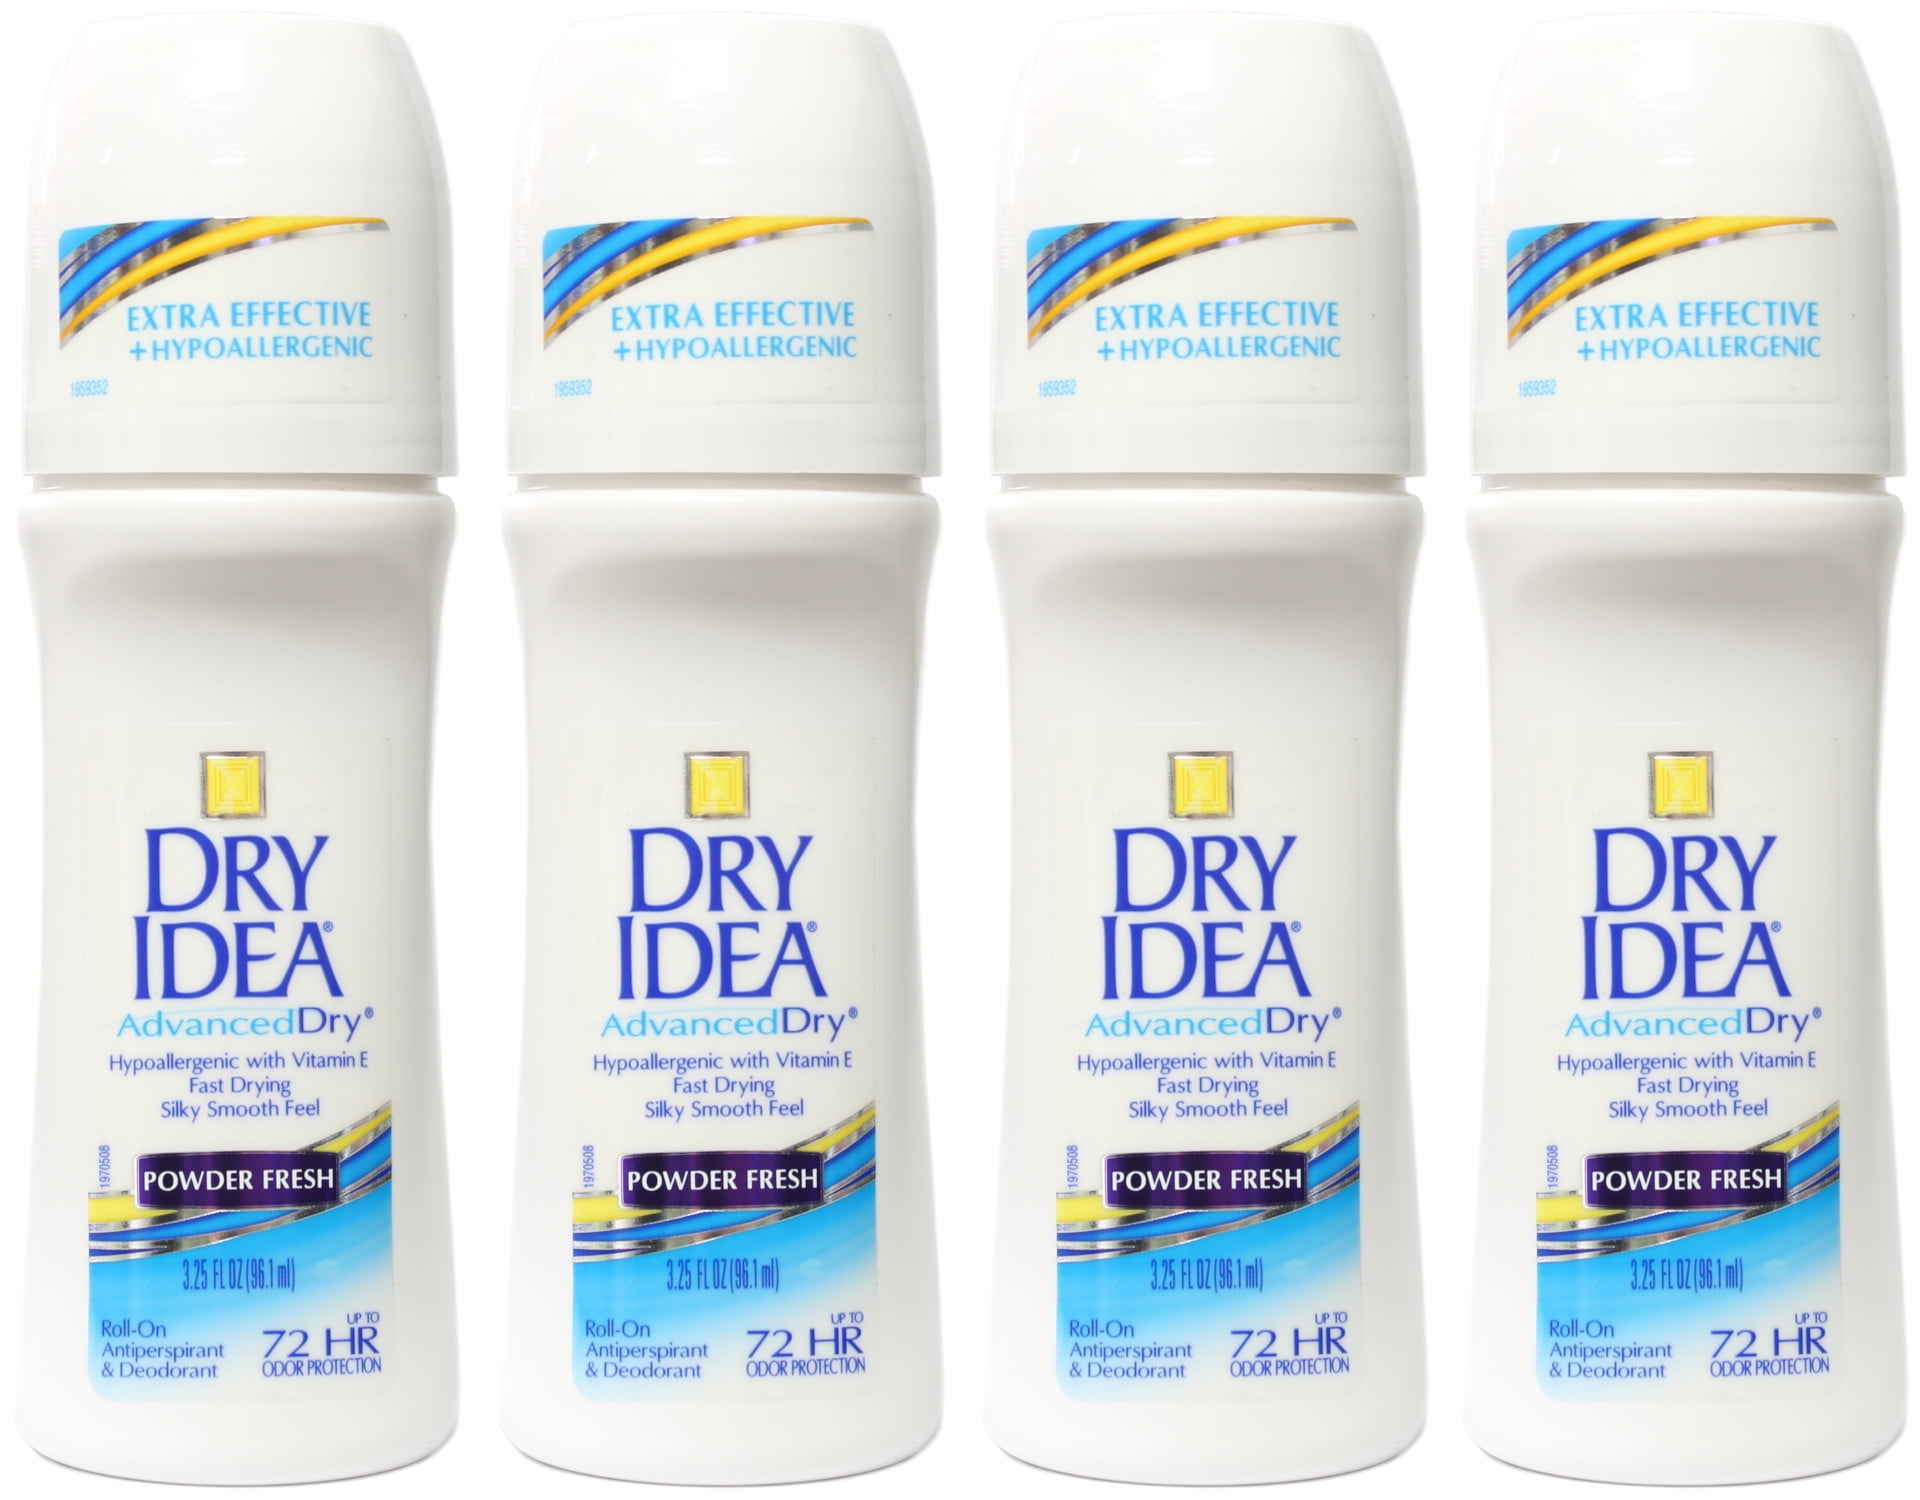 Rexona Shower Clean All Day Freshness - Antiperspirant Deodorant Roll-on  for Woman 40ml